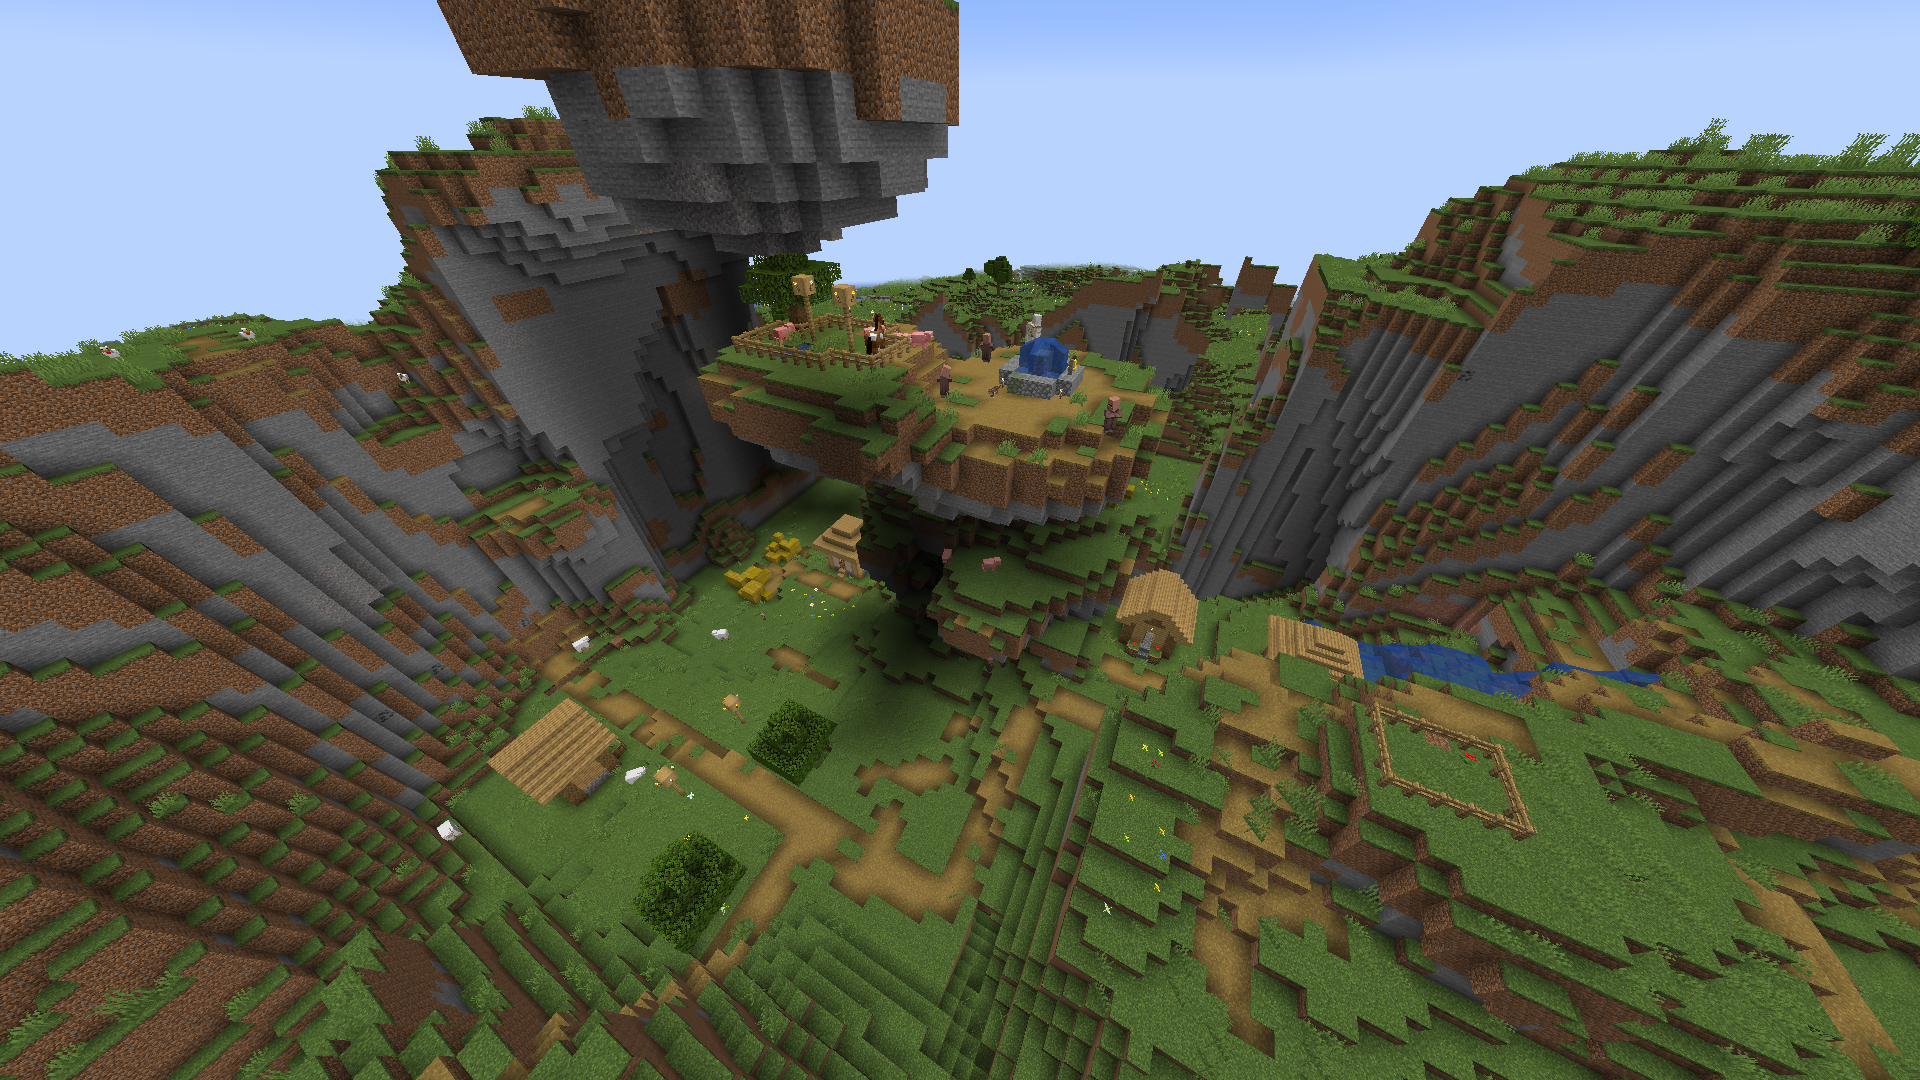 Wioska w Minecraft, która jest rozbita na wzgórzach